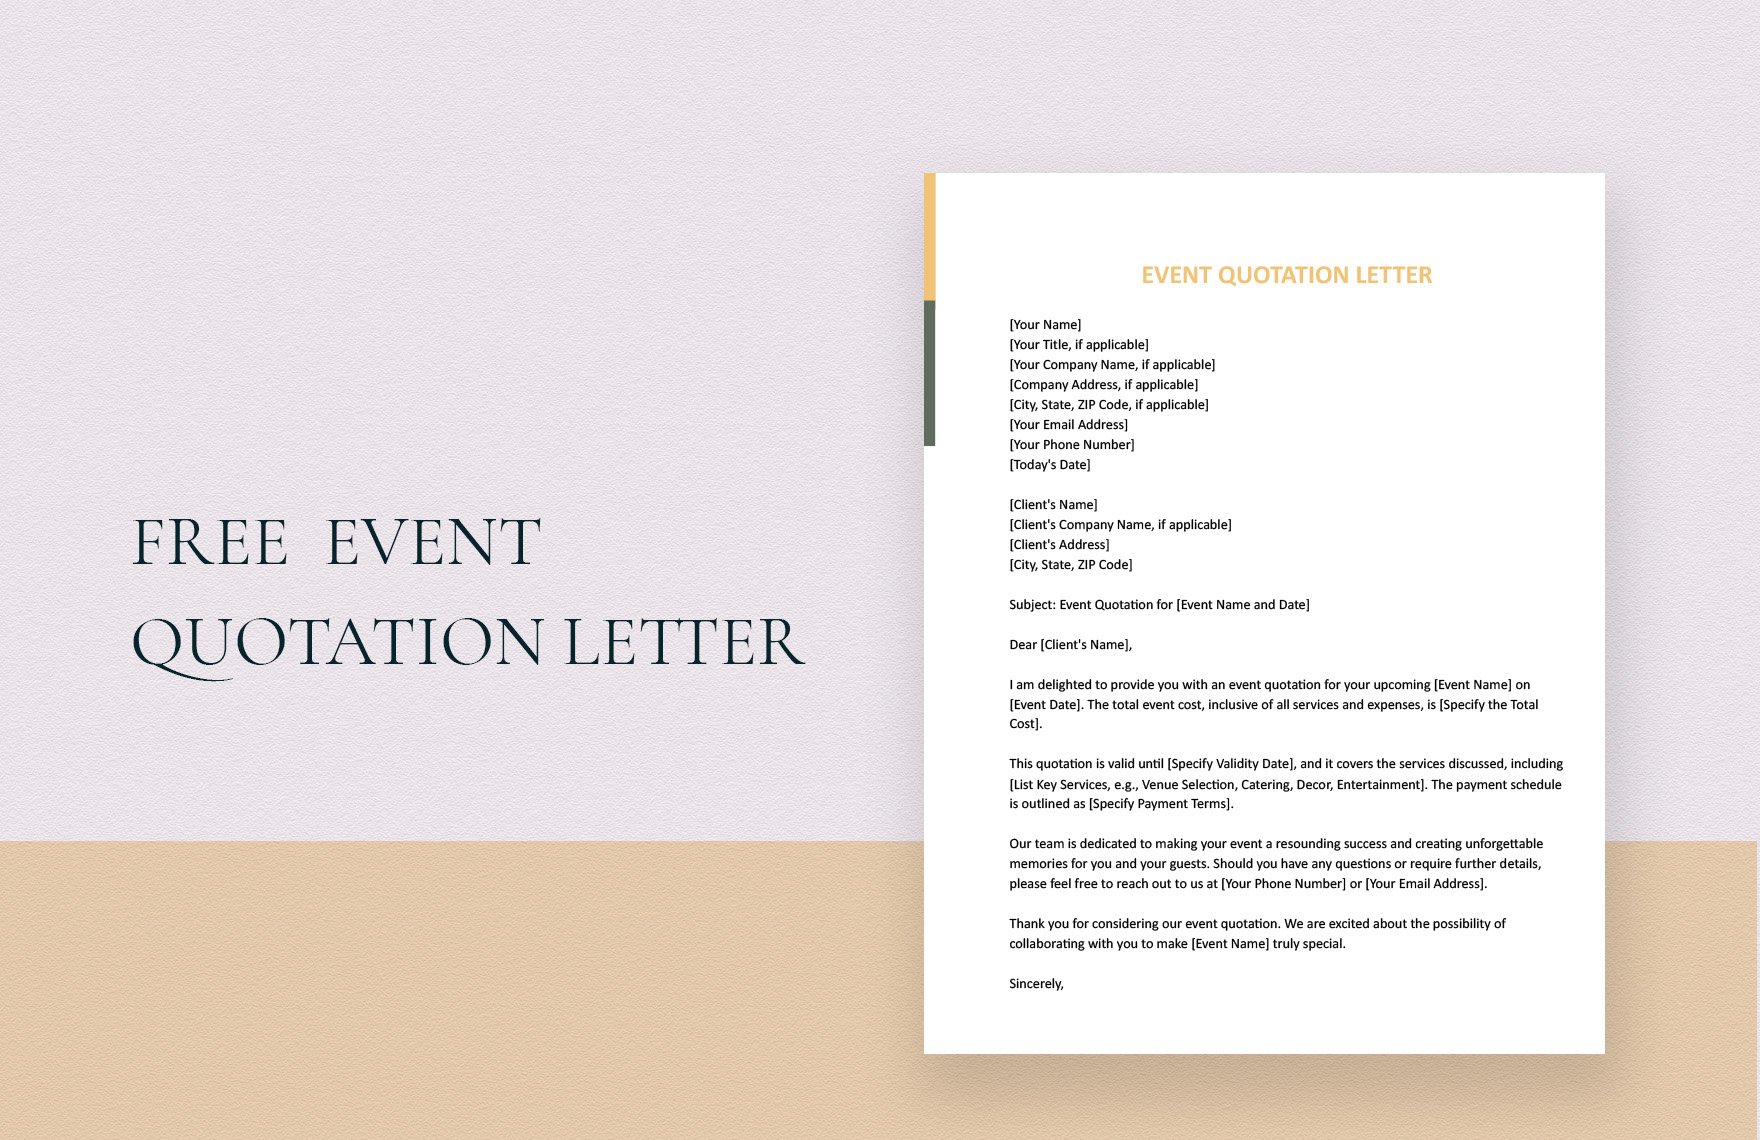 Event Quotation Letter